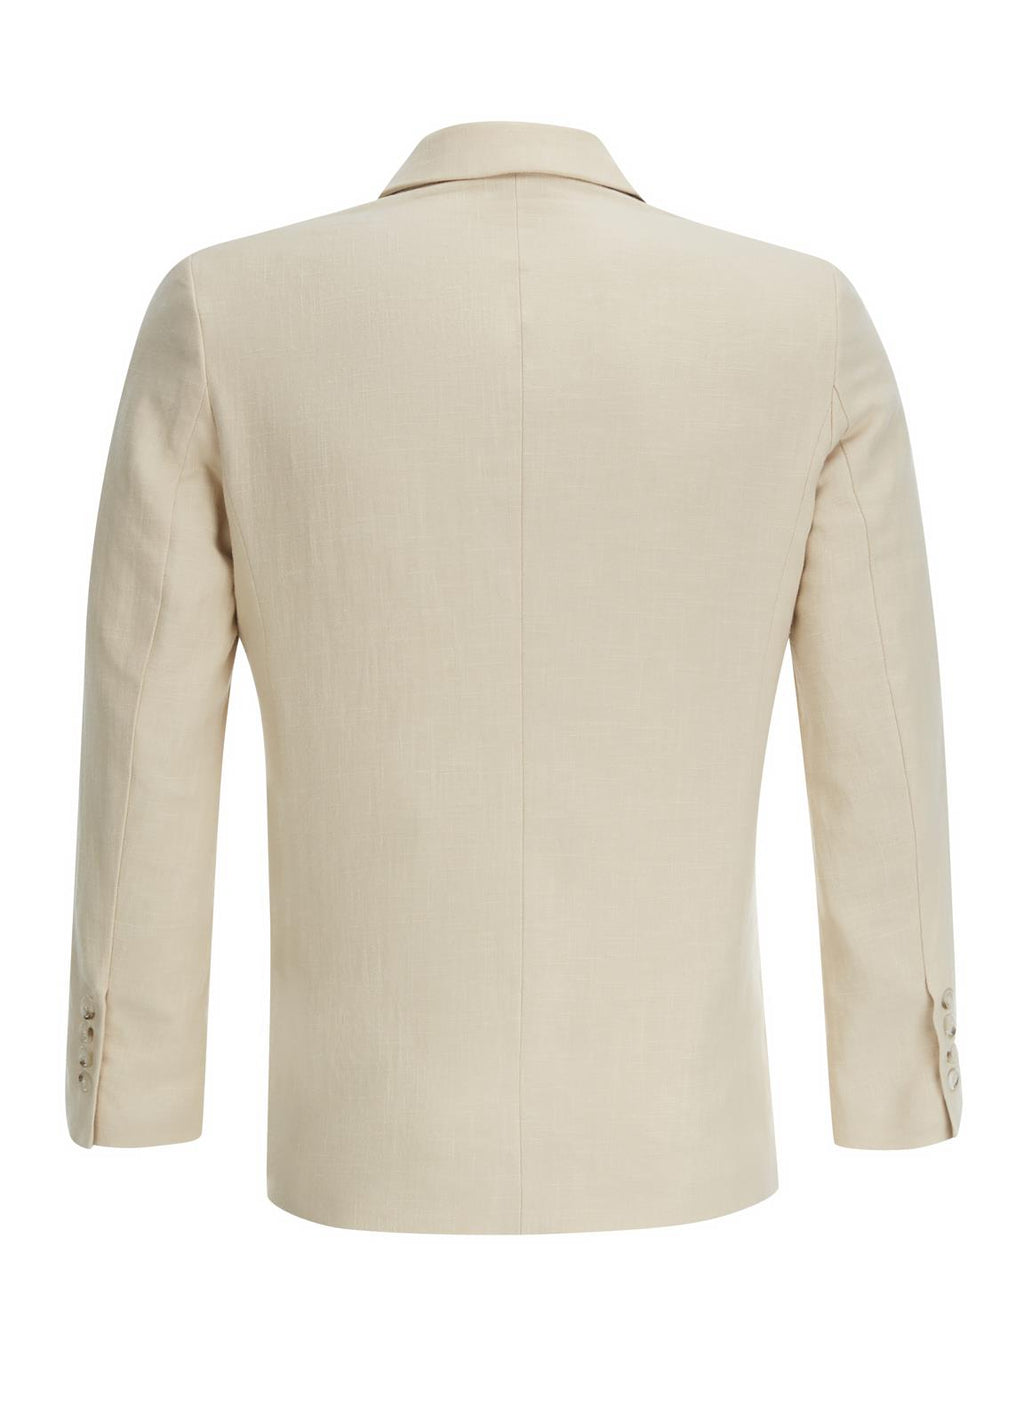 Socialite 1940s Style Gadabout Linen Suit – RevivalVintage